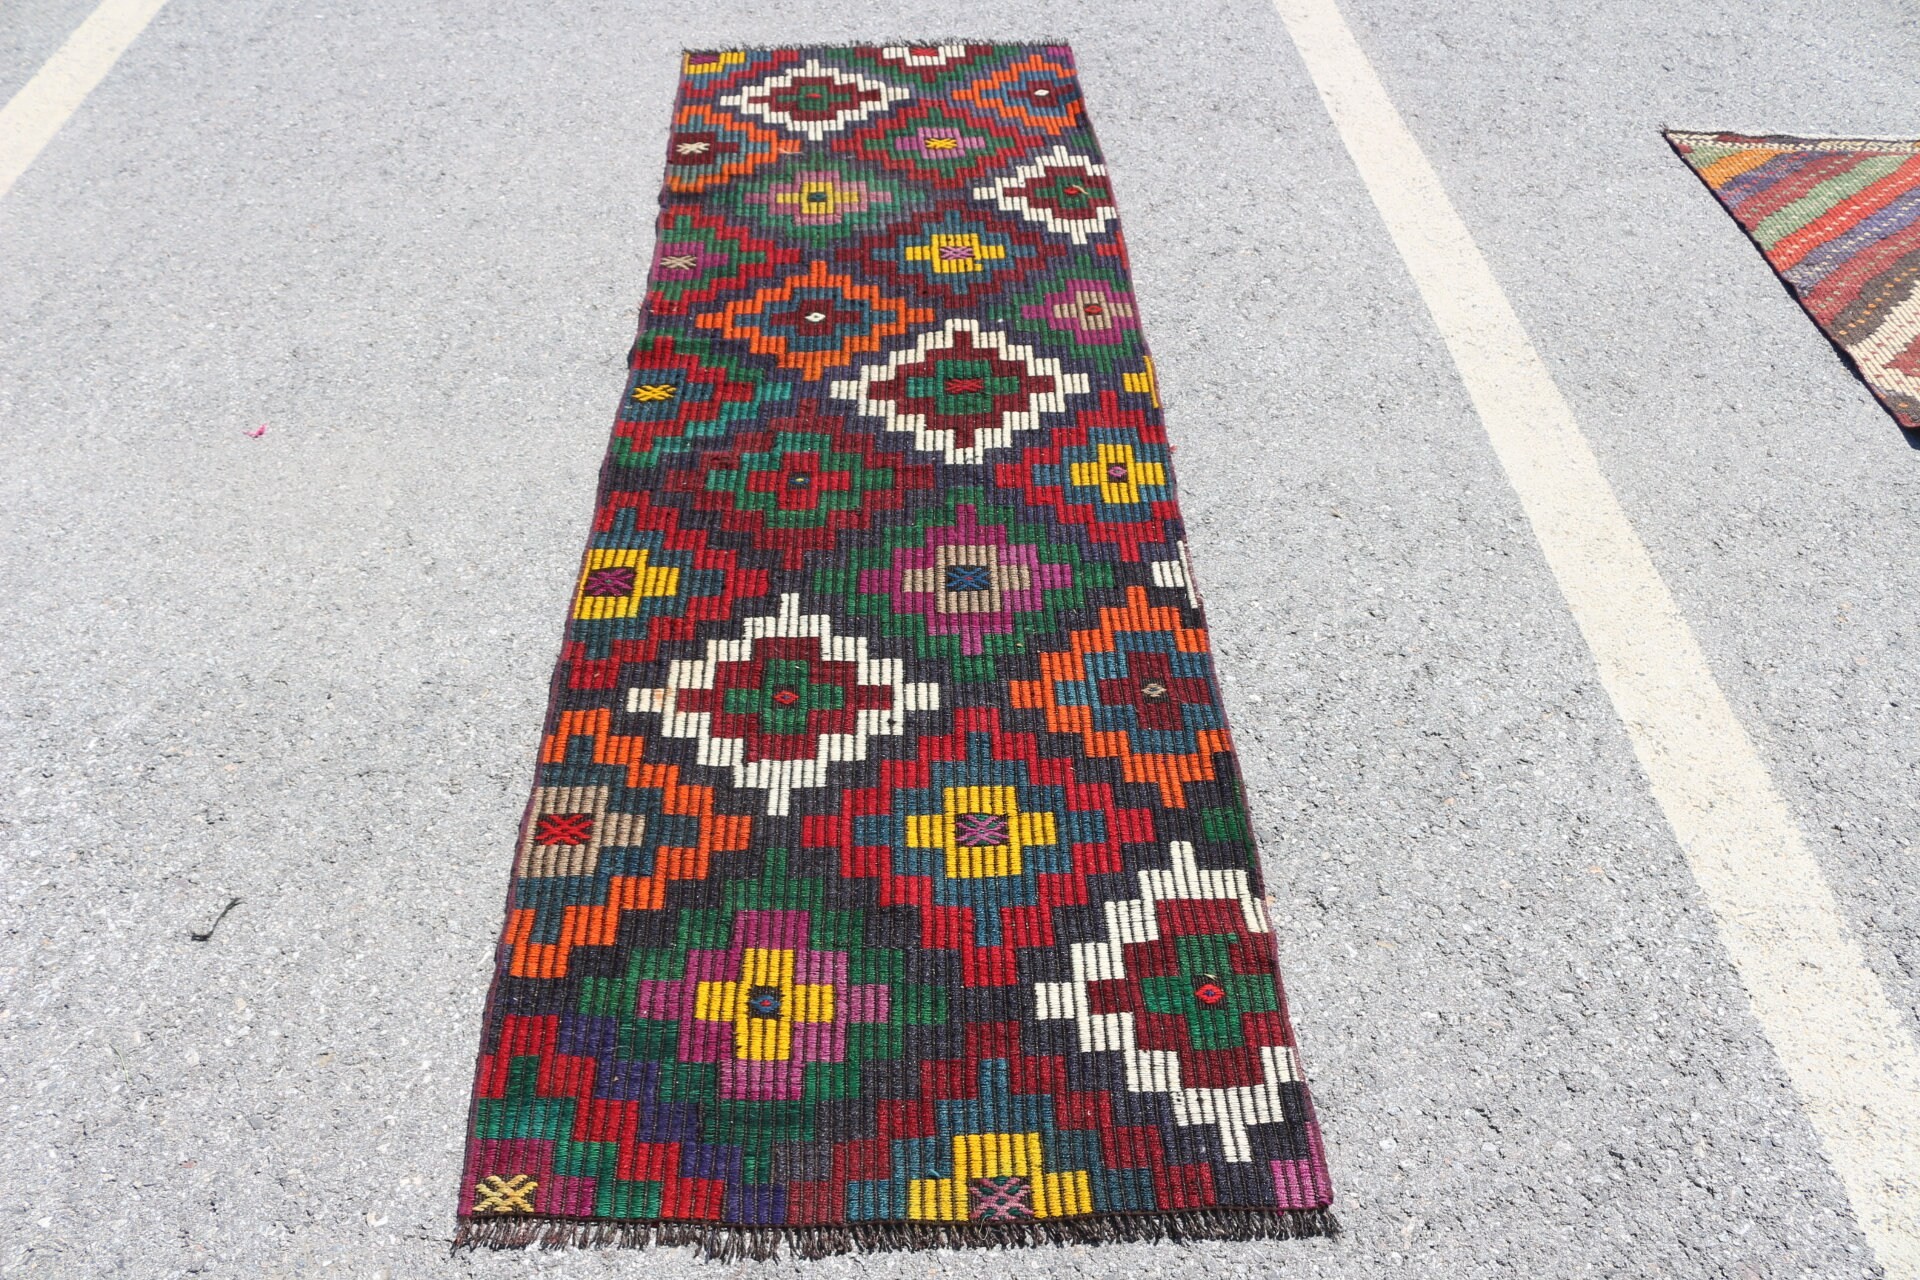 Moroccan Rug, Rugs for Stair, Turkish Rug, Brown Bedroom Rugs, Oriental Rug, Vintage Rugs, Kilim, Hallway Rugs, 2.6x8.4 ft Runner Rug